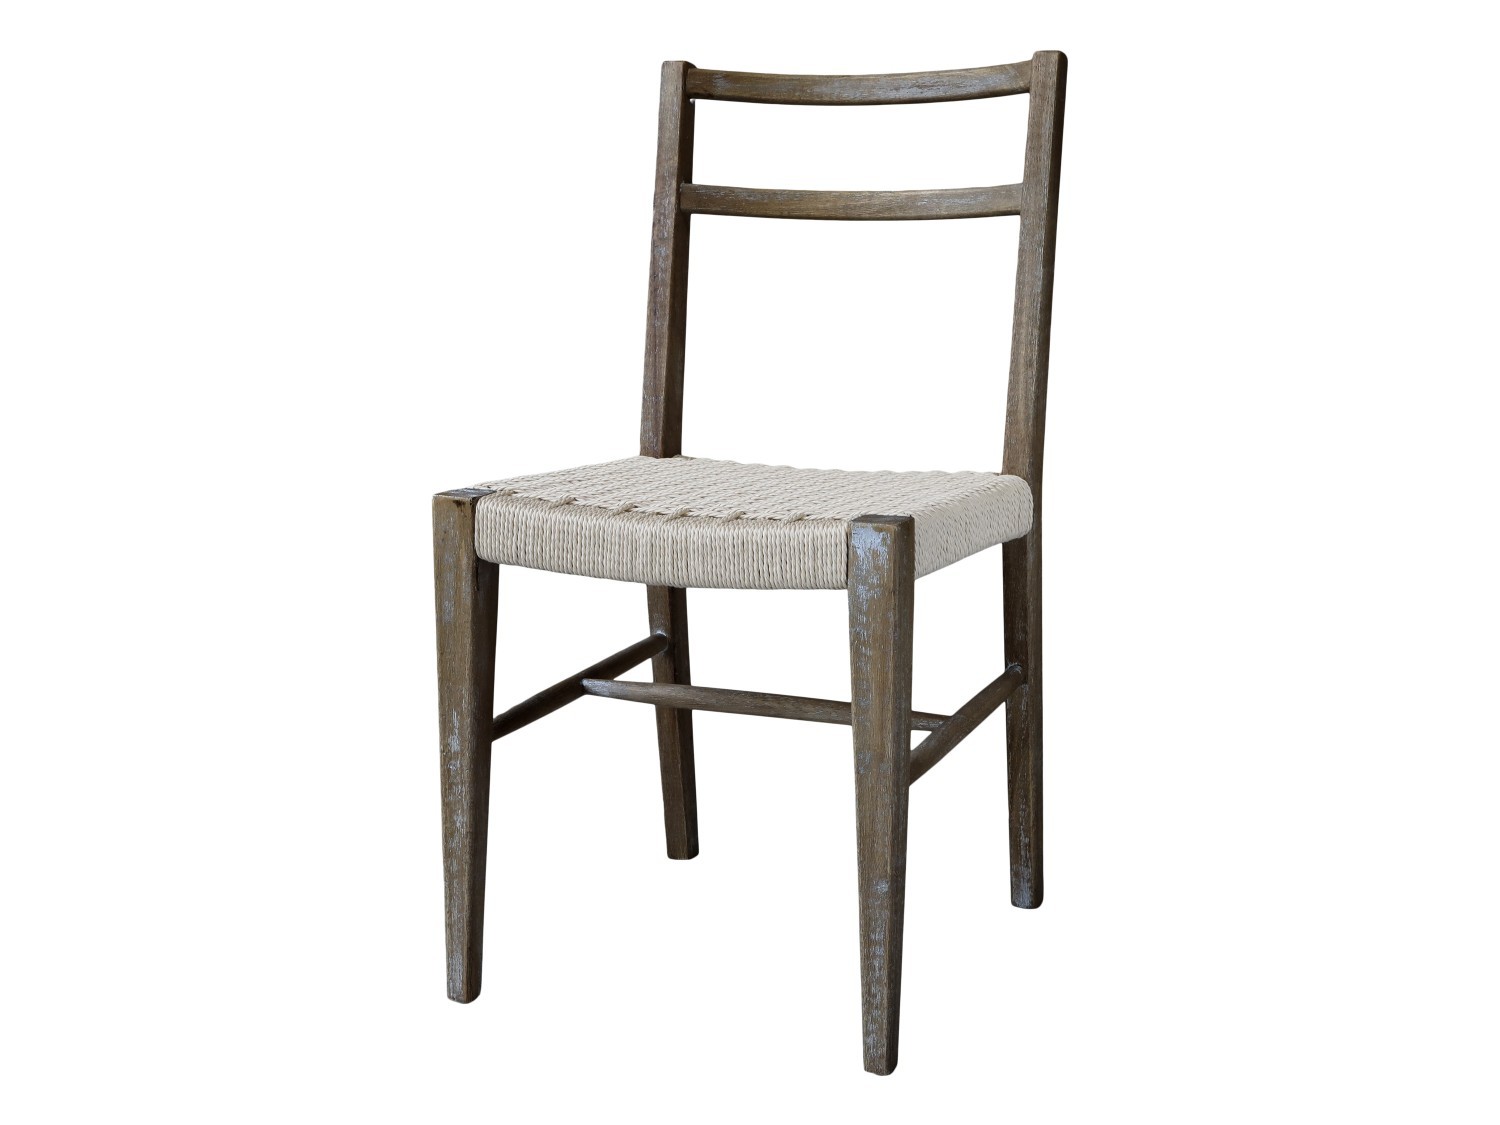 Přírodní dřevěná židle s výpletem Limoges Chair - 47*44*87 cm  Chic Antique